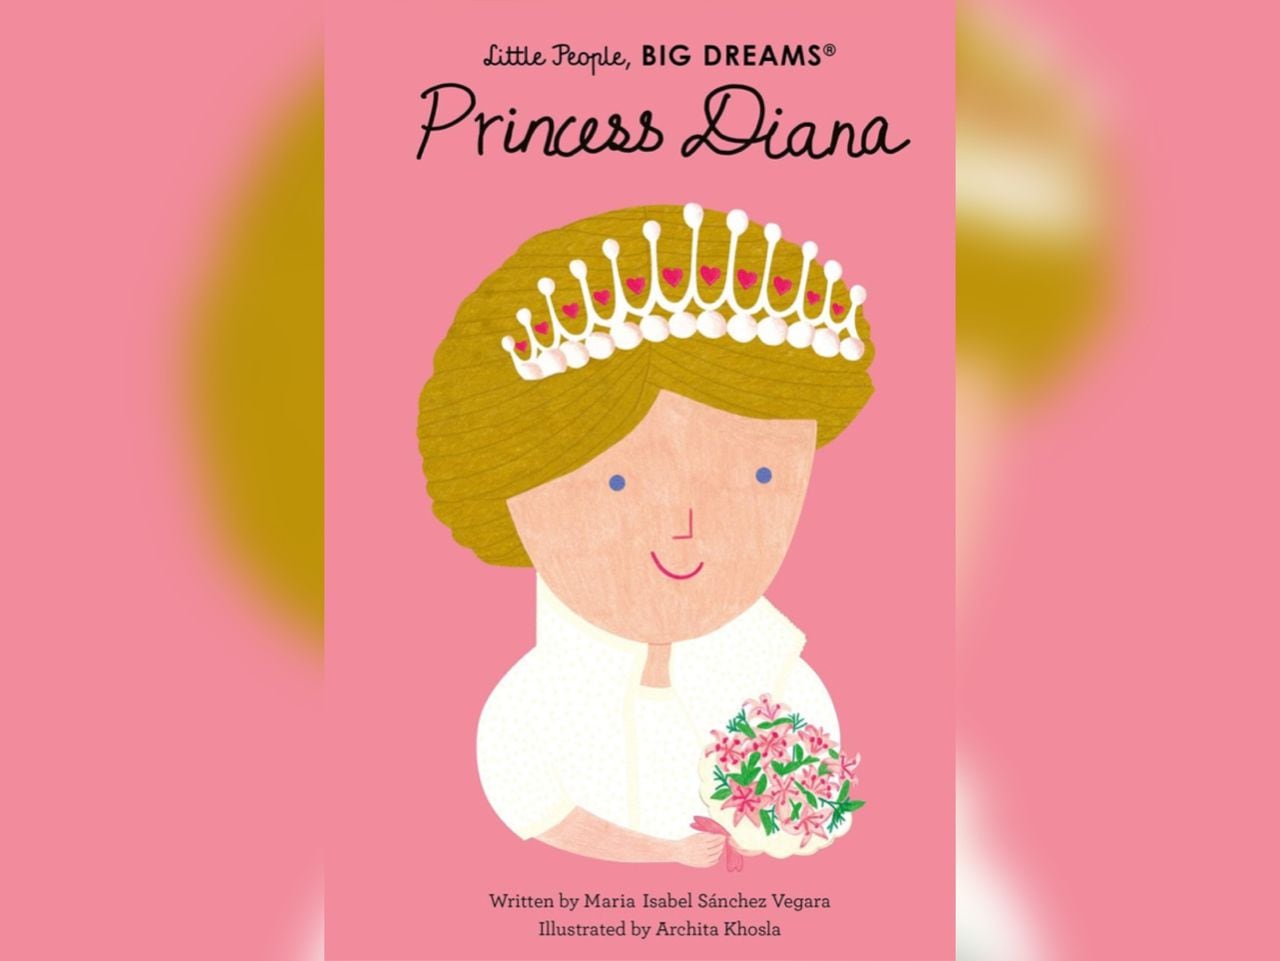 Foto: Tomada del libro Princess Diana, de la colección Little People, Big Dreams.